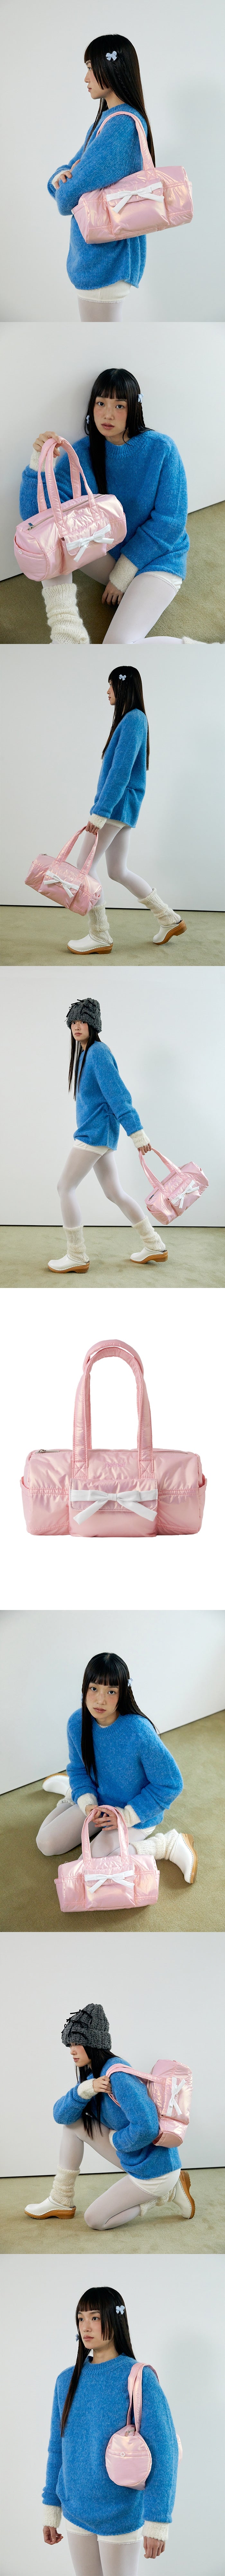 glossy ribbon duffle bag_pink